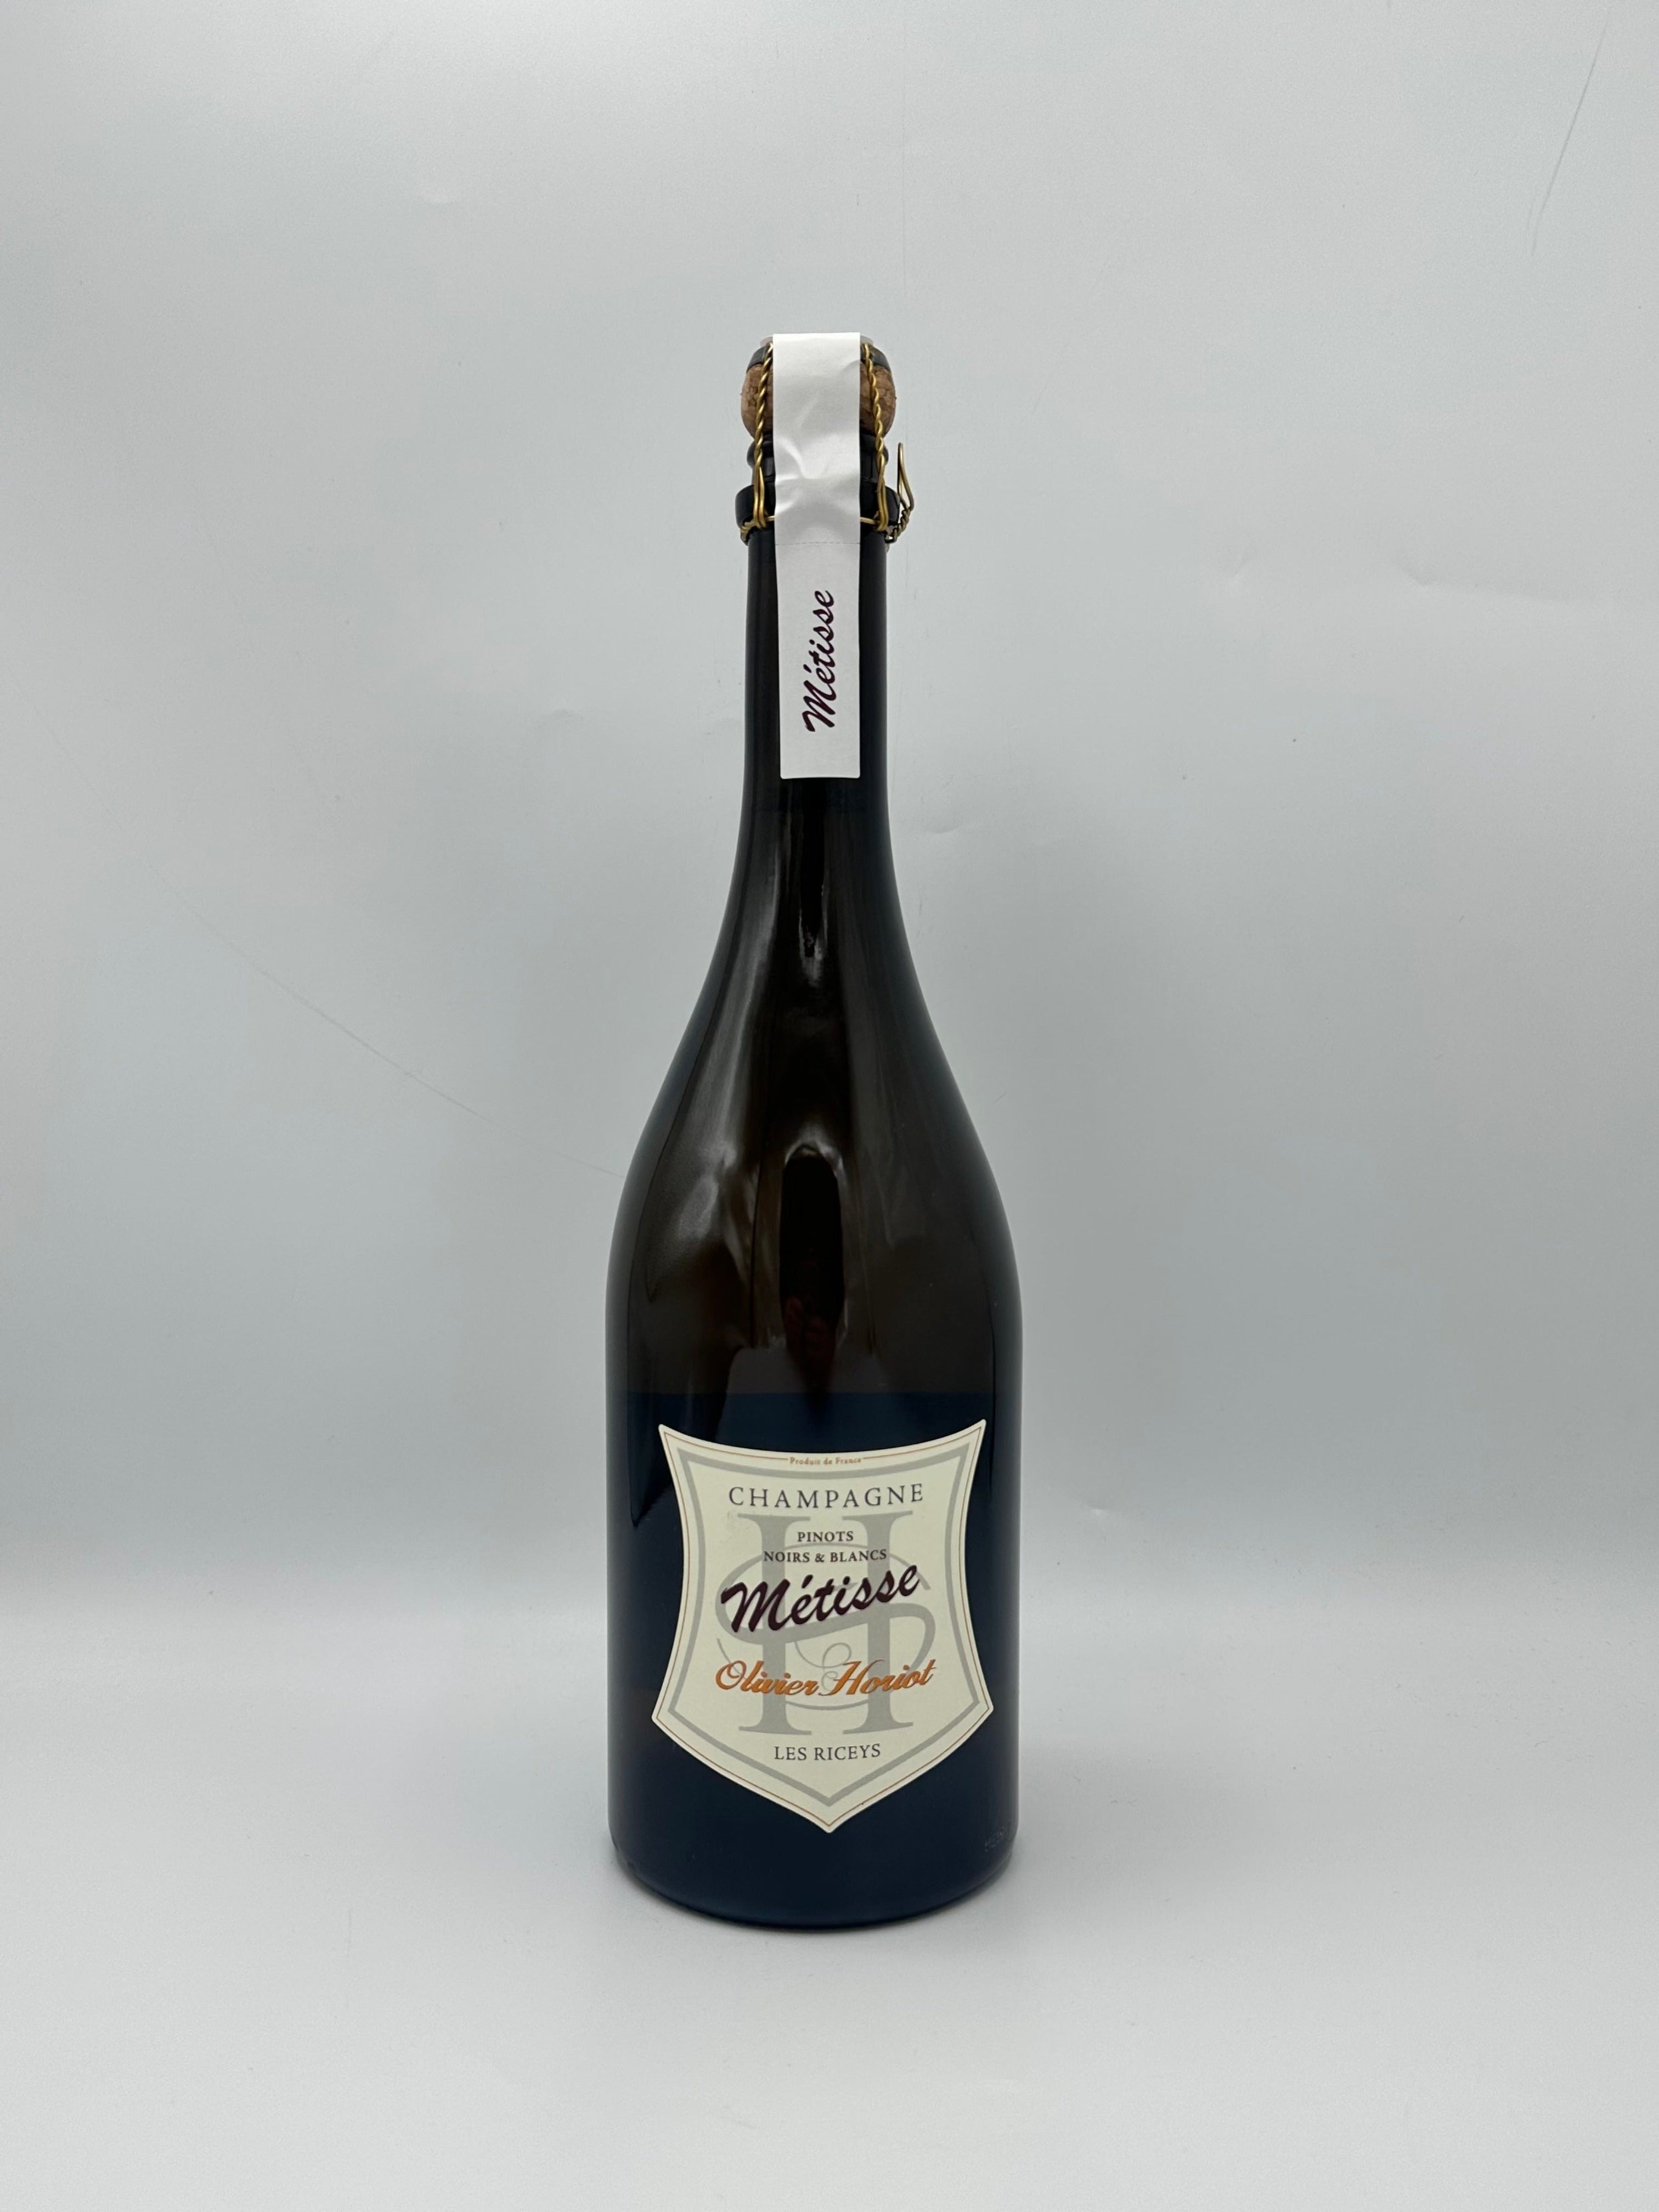 Champagne “Métisse” Brut Nature - Olivier Horiot 